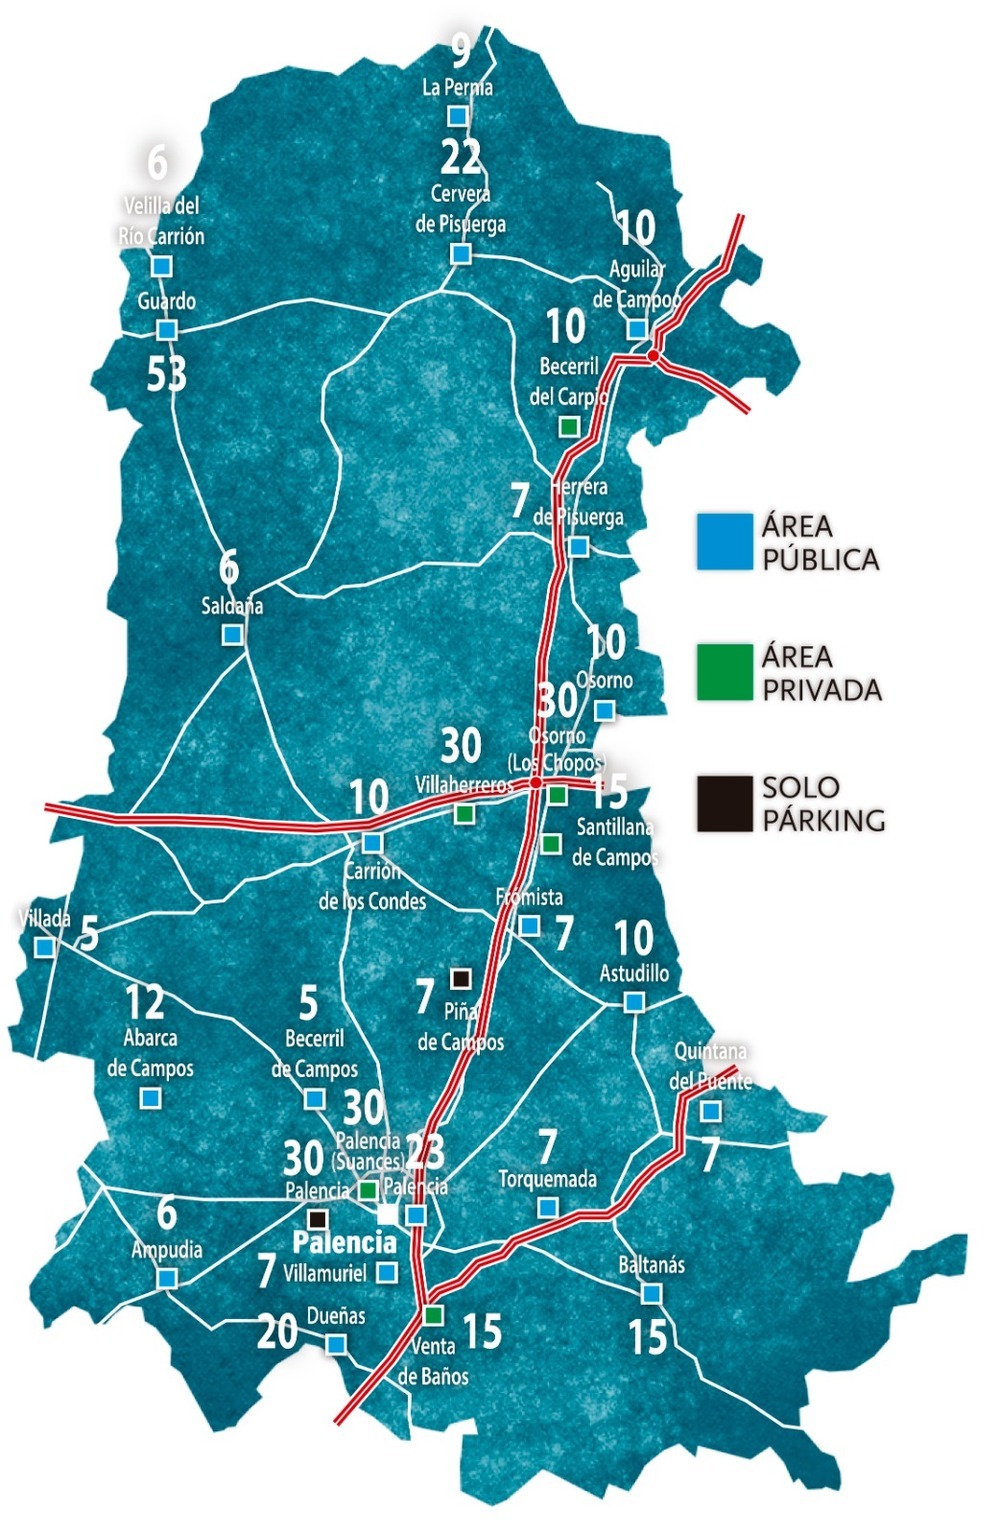 Palencia, líder regional de las autocaravanas con 28 áreas